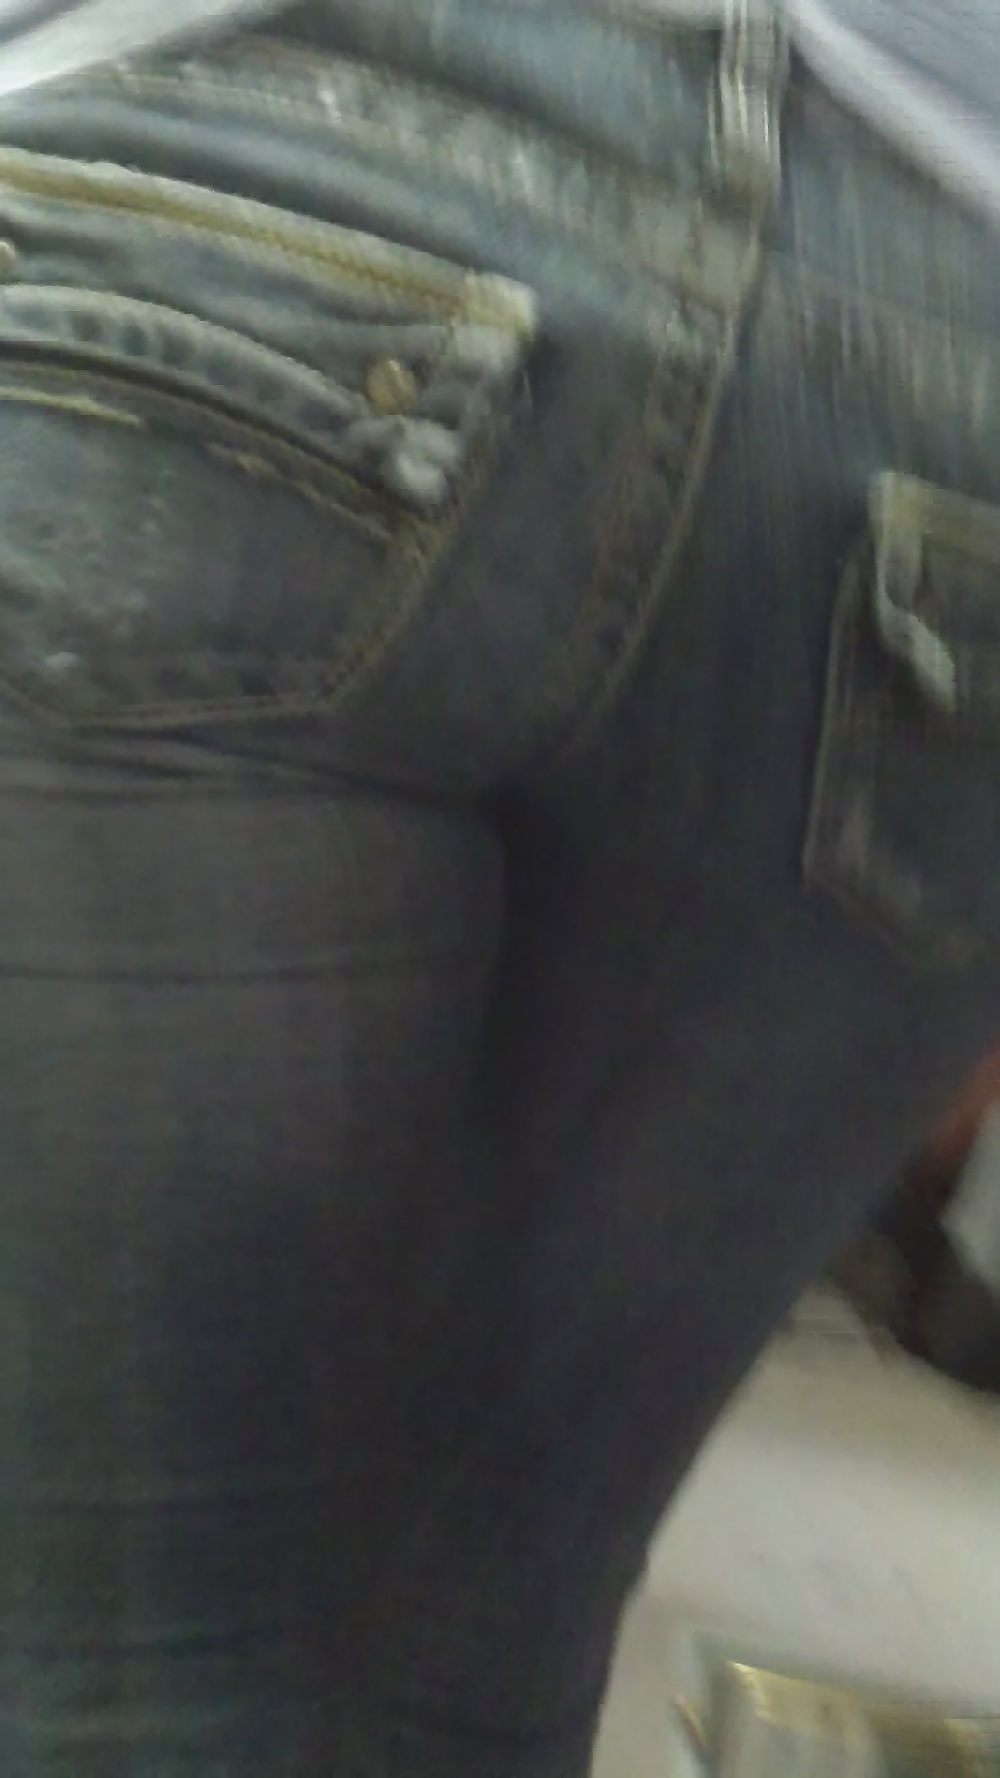 Popular teen girls ass & butt in jeans part 4  #26742508